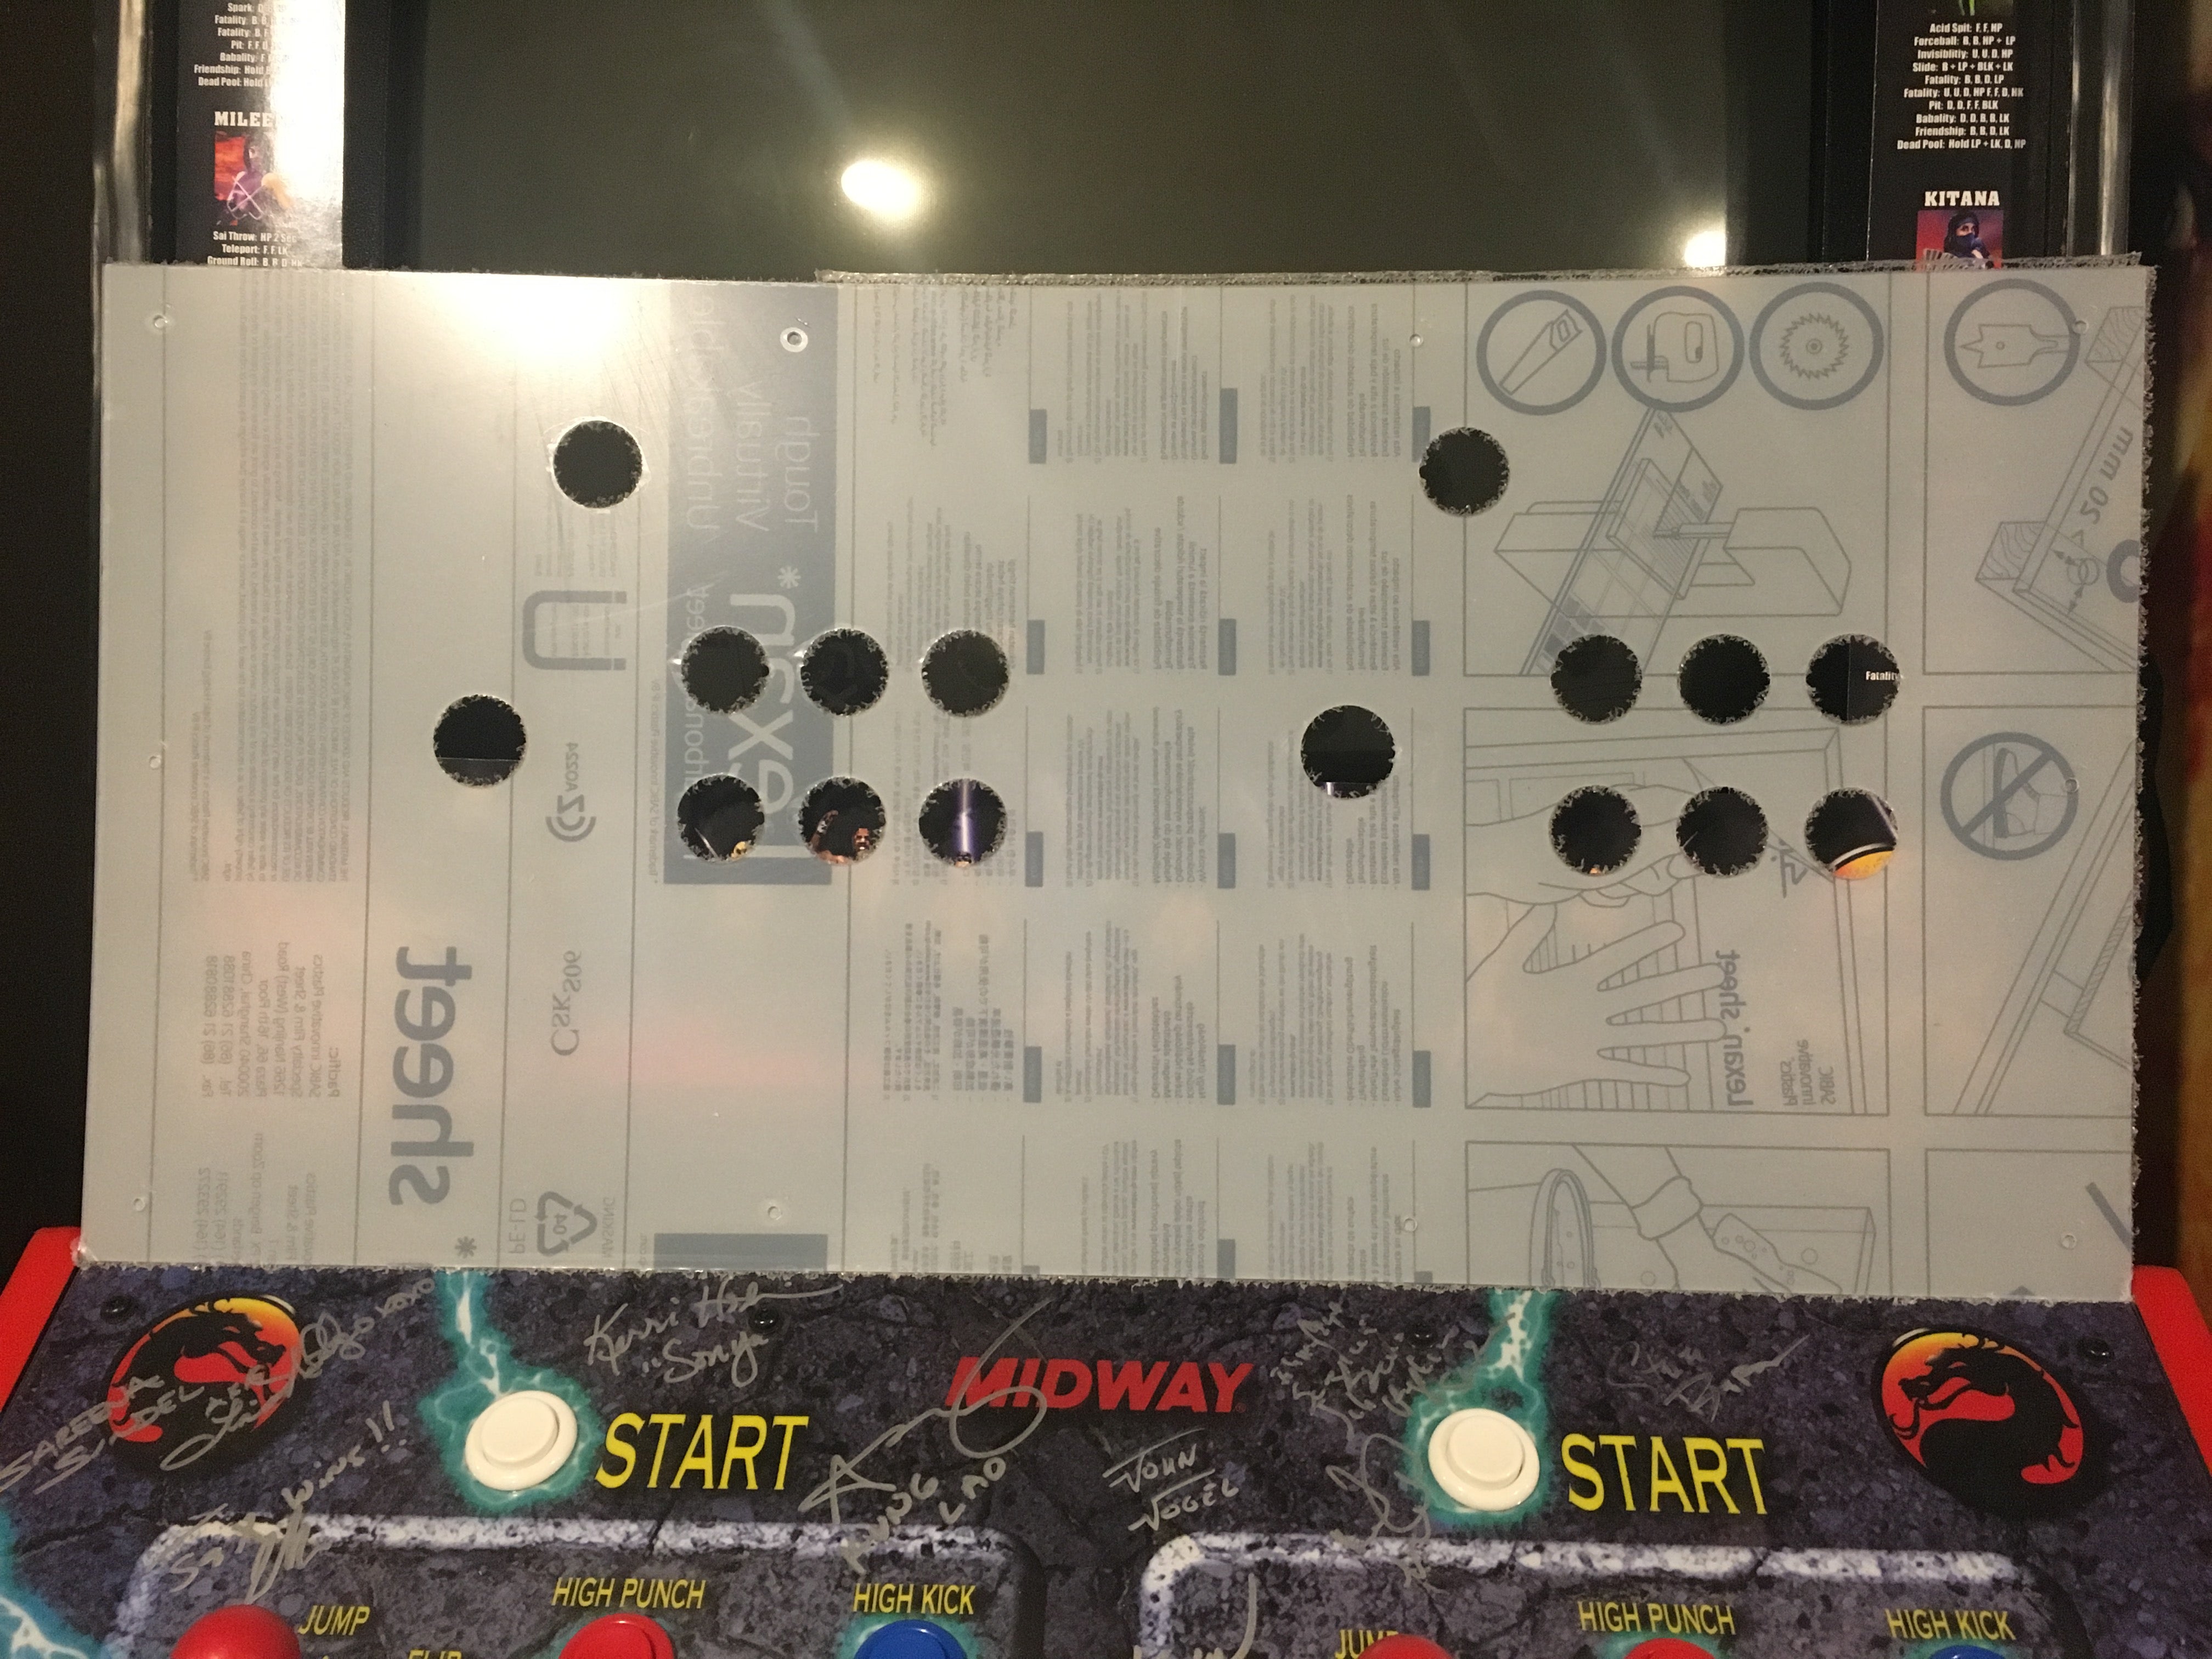 Protecteur de panneau de commande en Lexan/polycarbonate à 6 boutons Mortal Kombat Style